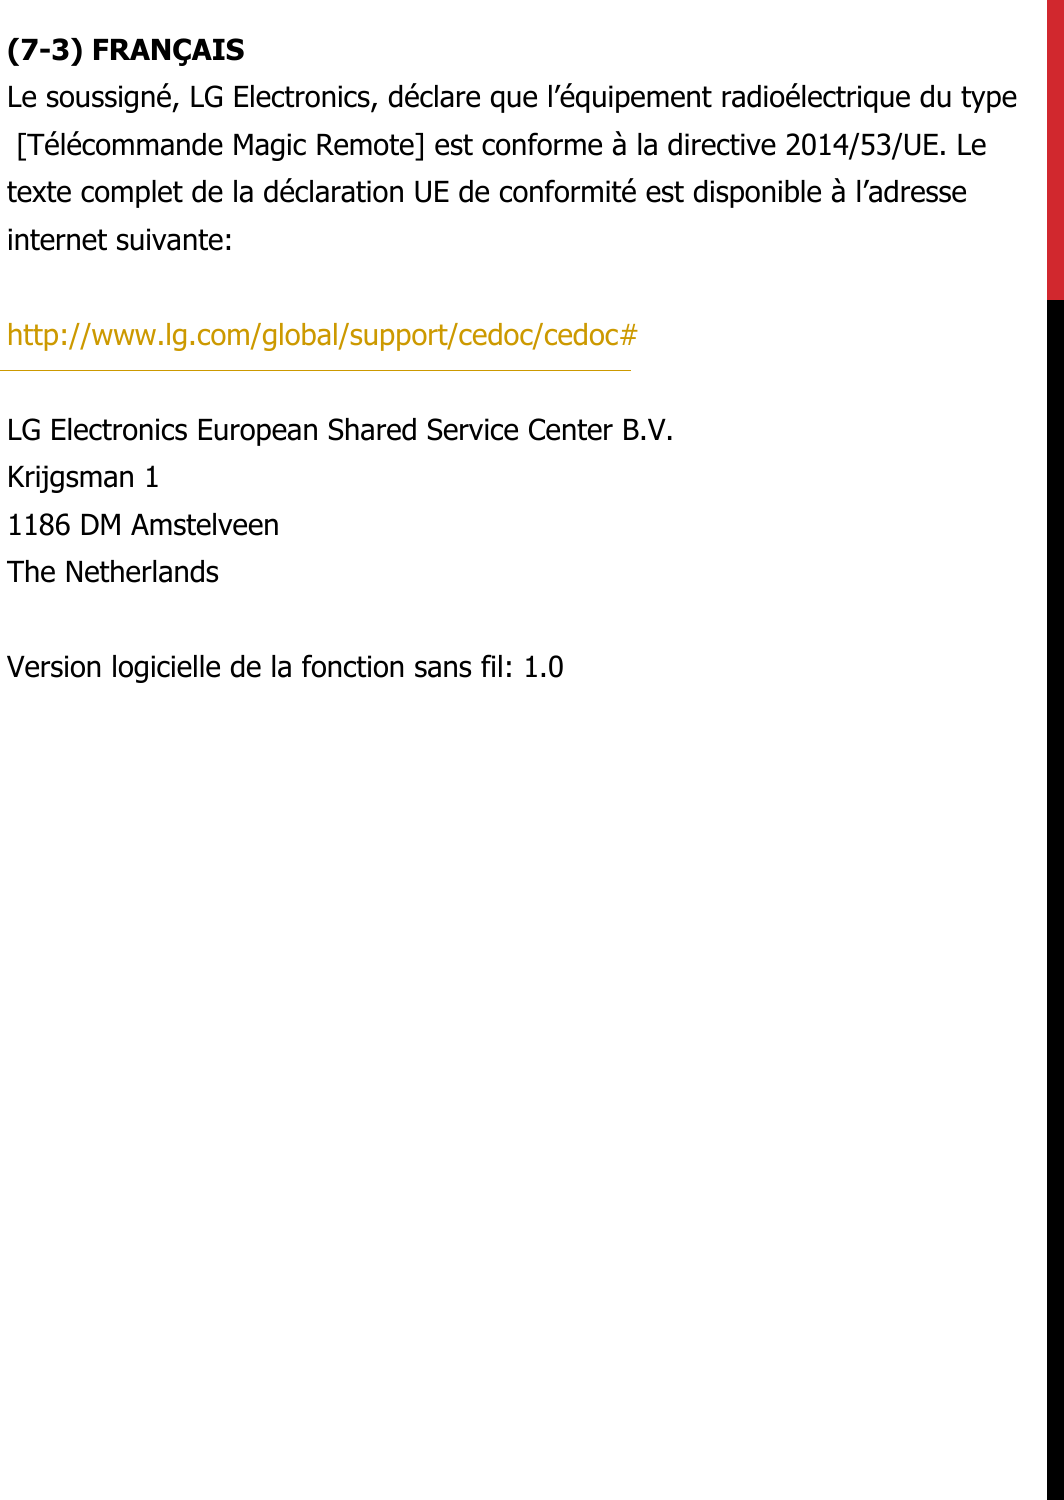 (7-3) FRANÇAISLe soussigné, LG Electronics, déclare que l’équipement radioélectrique du type [Télécommande Magic Remote] est conforme à la directive 2014/53/UE. Letexte complet de la déclaration UE de conformité est disponible à l’adresse internet suivante:   http://www.lg.com/global/support/cedoc/cedoc#   LG Electronics European Shared Service Center B.V.  Krijgsman 1  1186 DM Amstelveen  The Netherlands   Version logicielle de la fonction sans fil: 1.0